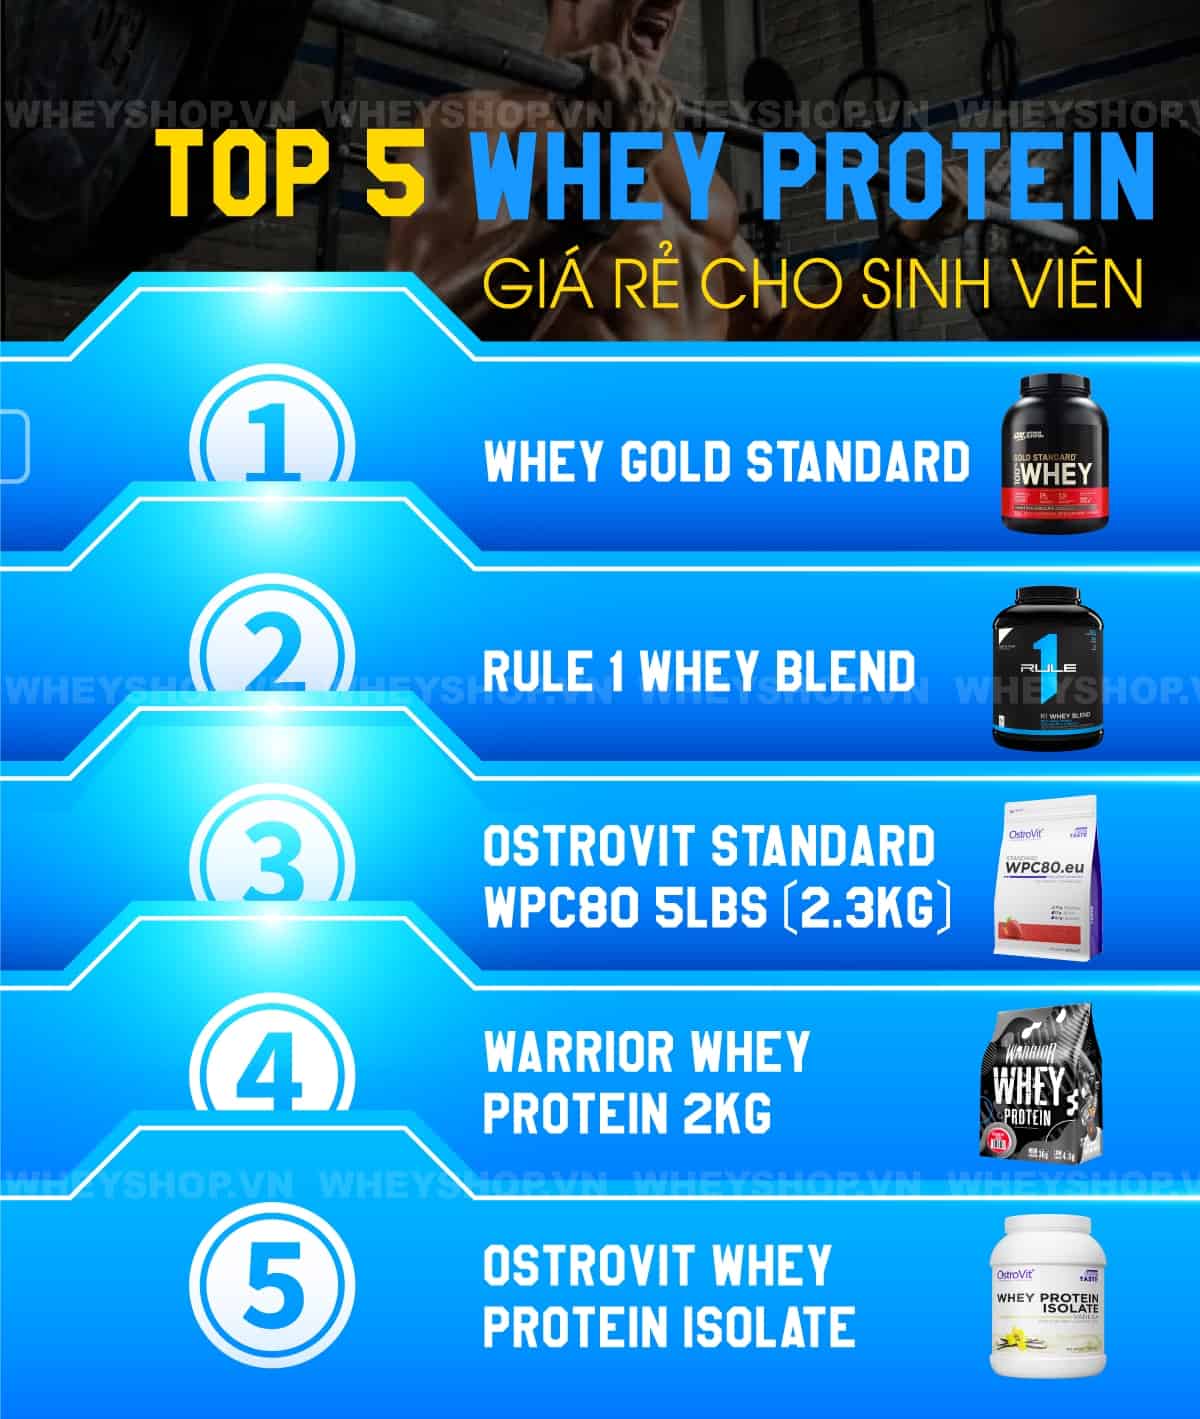 Nhiều học sinh, sinh viên có tài chính hạn chế chưa thể sử dụng Whey Protein đắt đỏ. WheyShop gợi ý Top 5+ Whey Protein giá rẻ cho sinh viên hiệu quả tăng cơ...